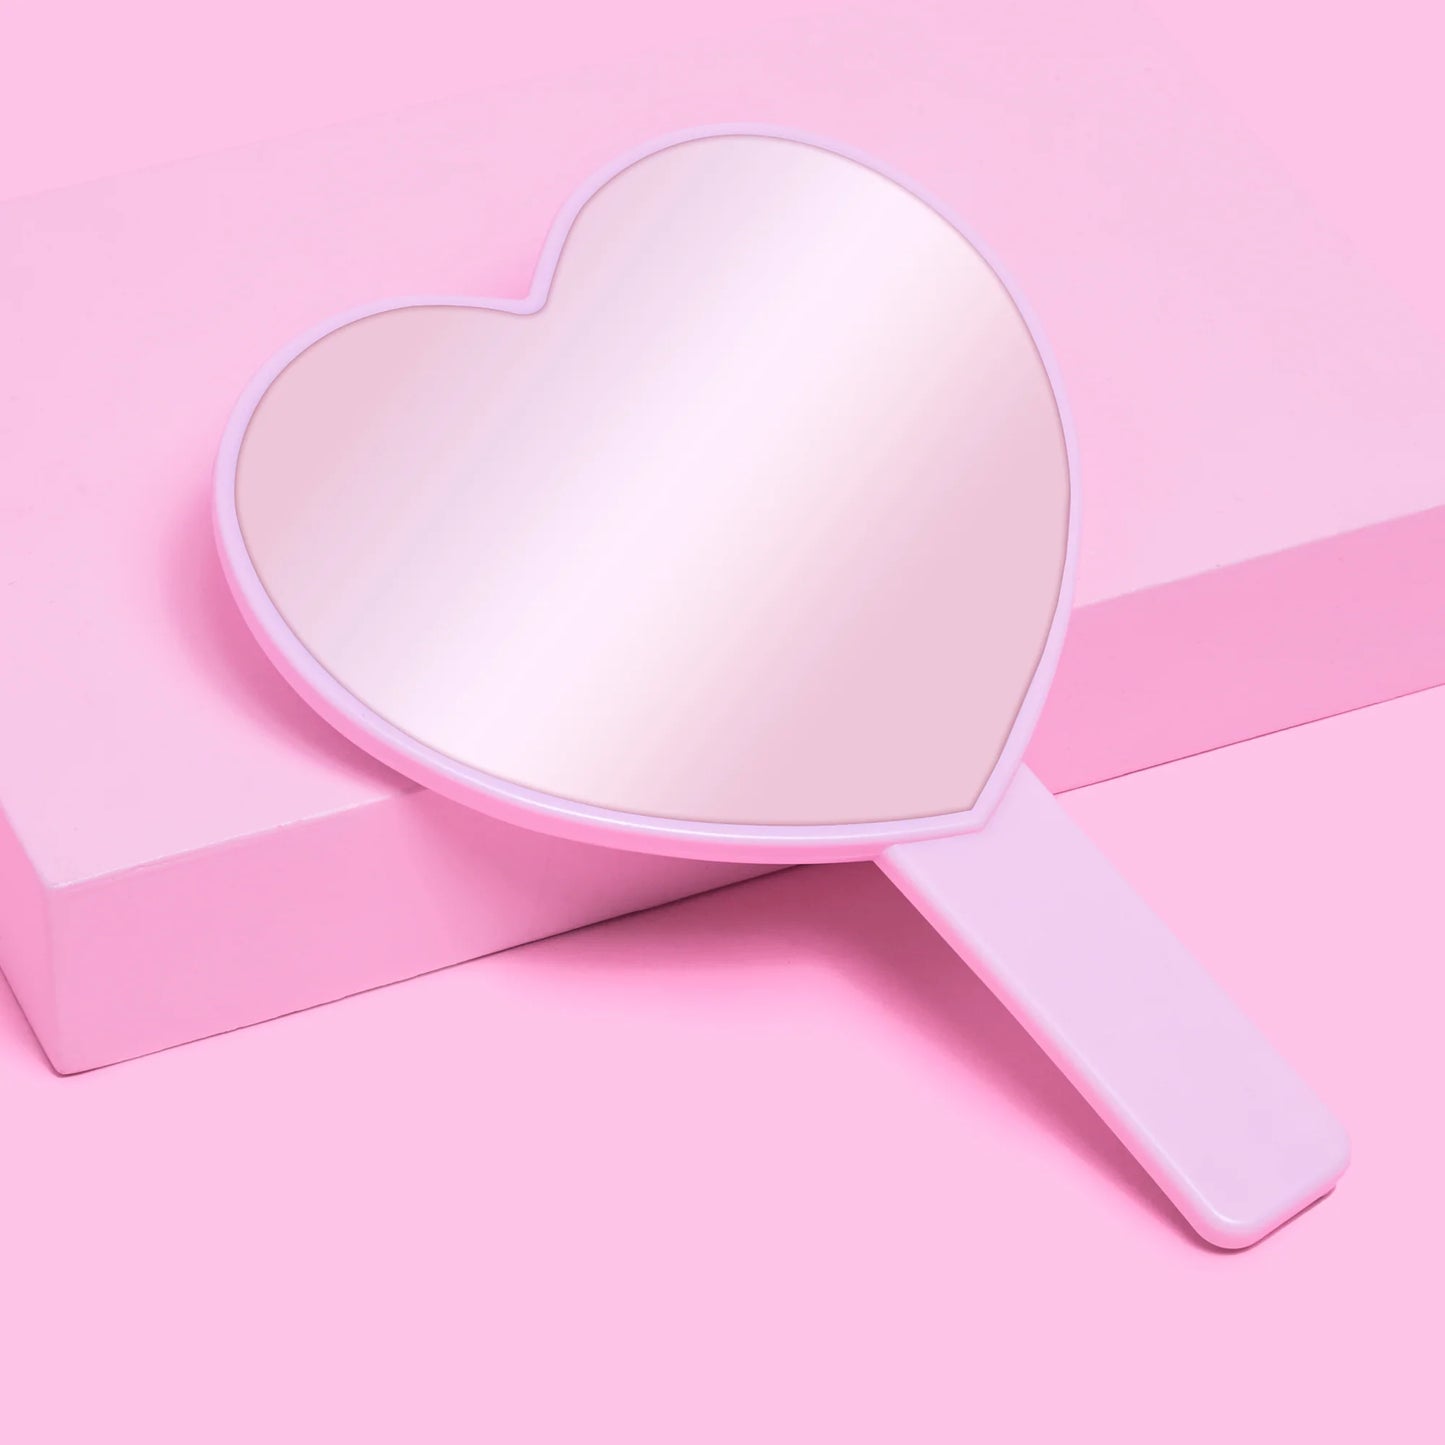 Espejo de Mano en Forma de Corazón “Slay Queen!” Heart Shaped Handheld Mirror - Beauty Creations